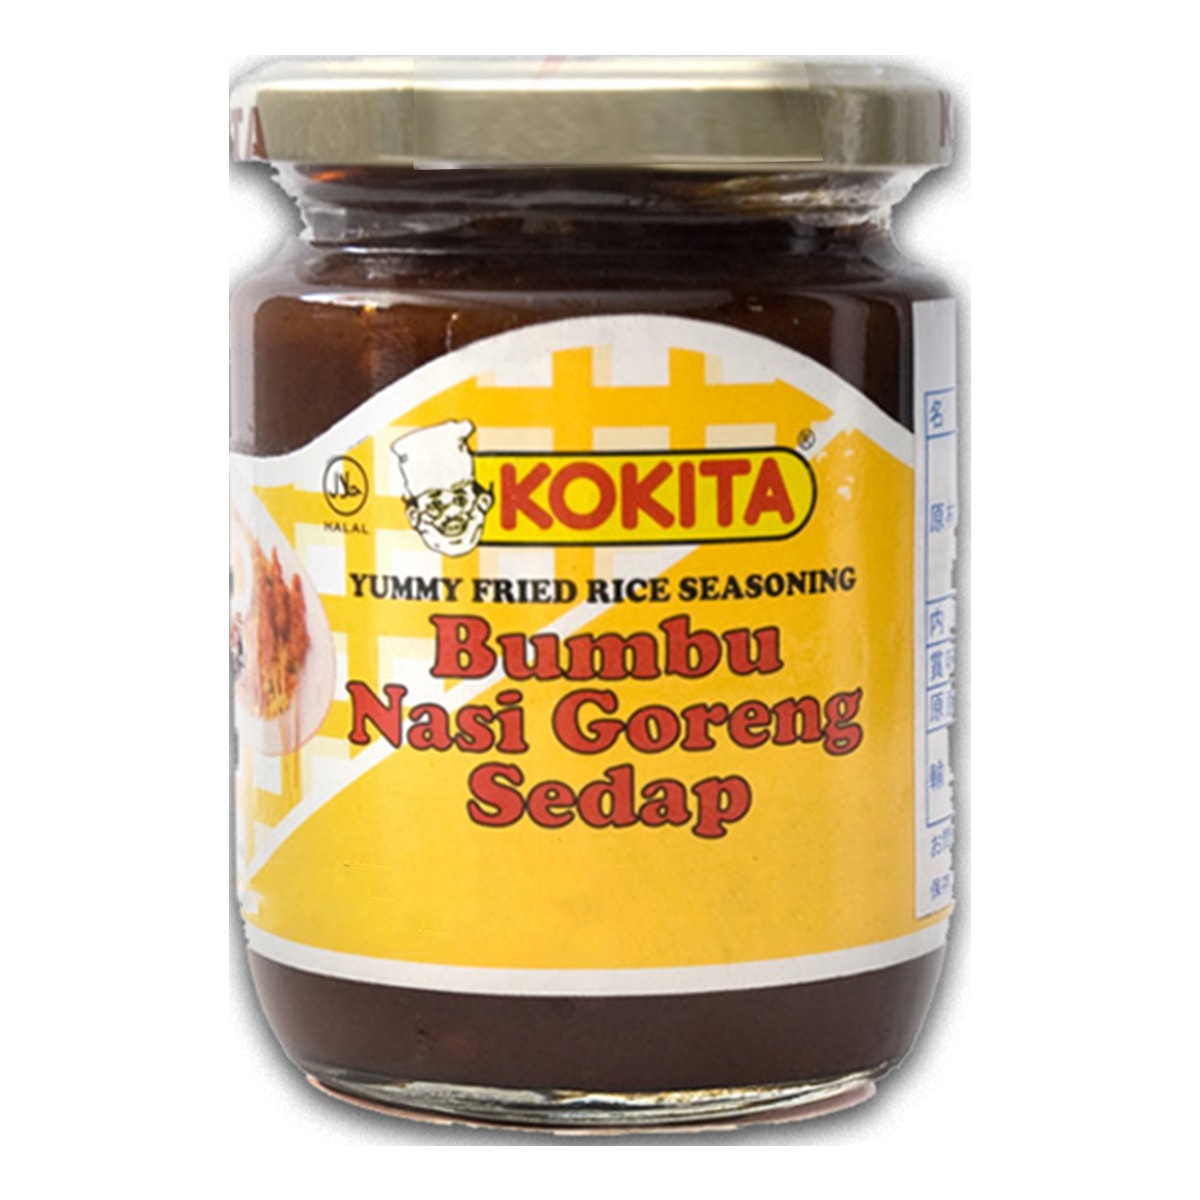 Buy Kokita Bumbu Nasi Goreng Sedap (Yummy Fried Rice Seasoning) - 240 gm